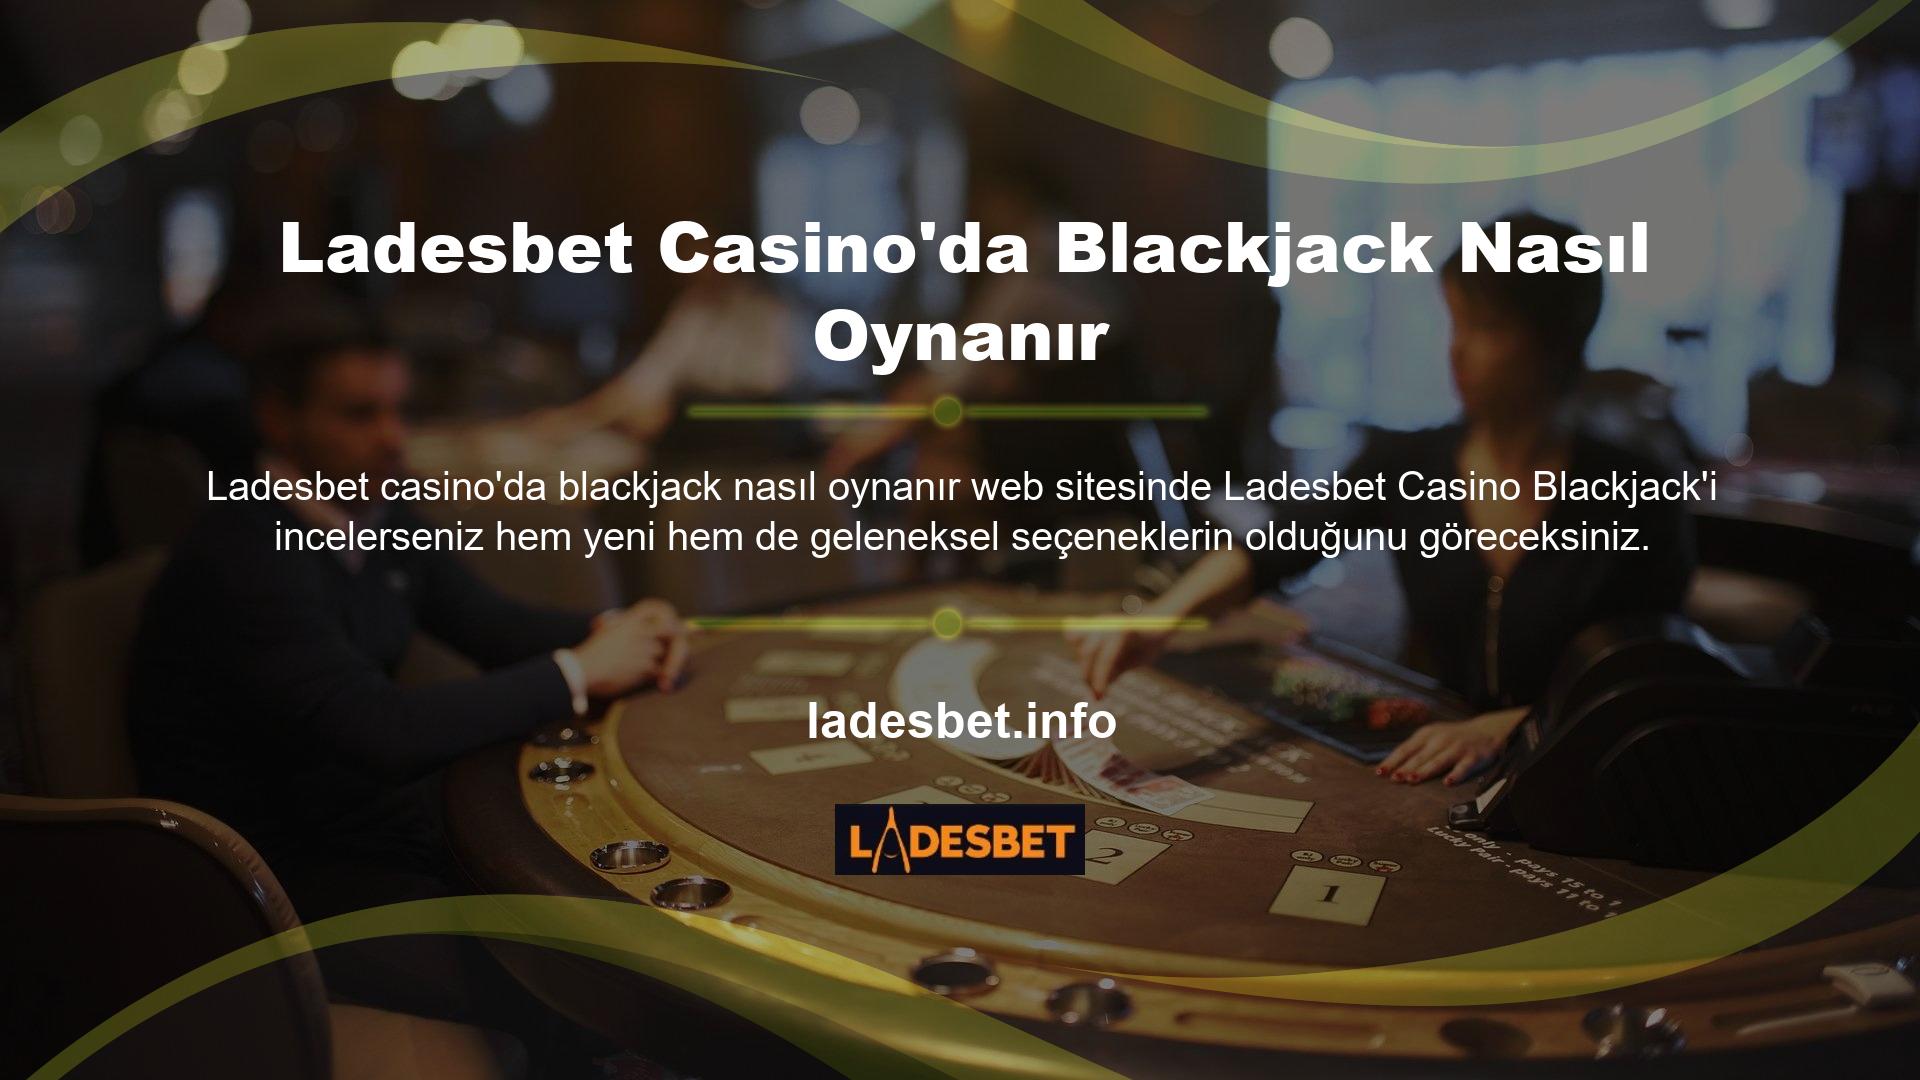 Diamond Blackjack gibi çok popüler oyunlar olsa da Blackjack, gerçek parayla oynanan oyunlara göre oldukça popüler ve kazançlı bir alternatiftir